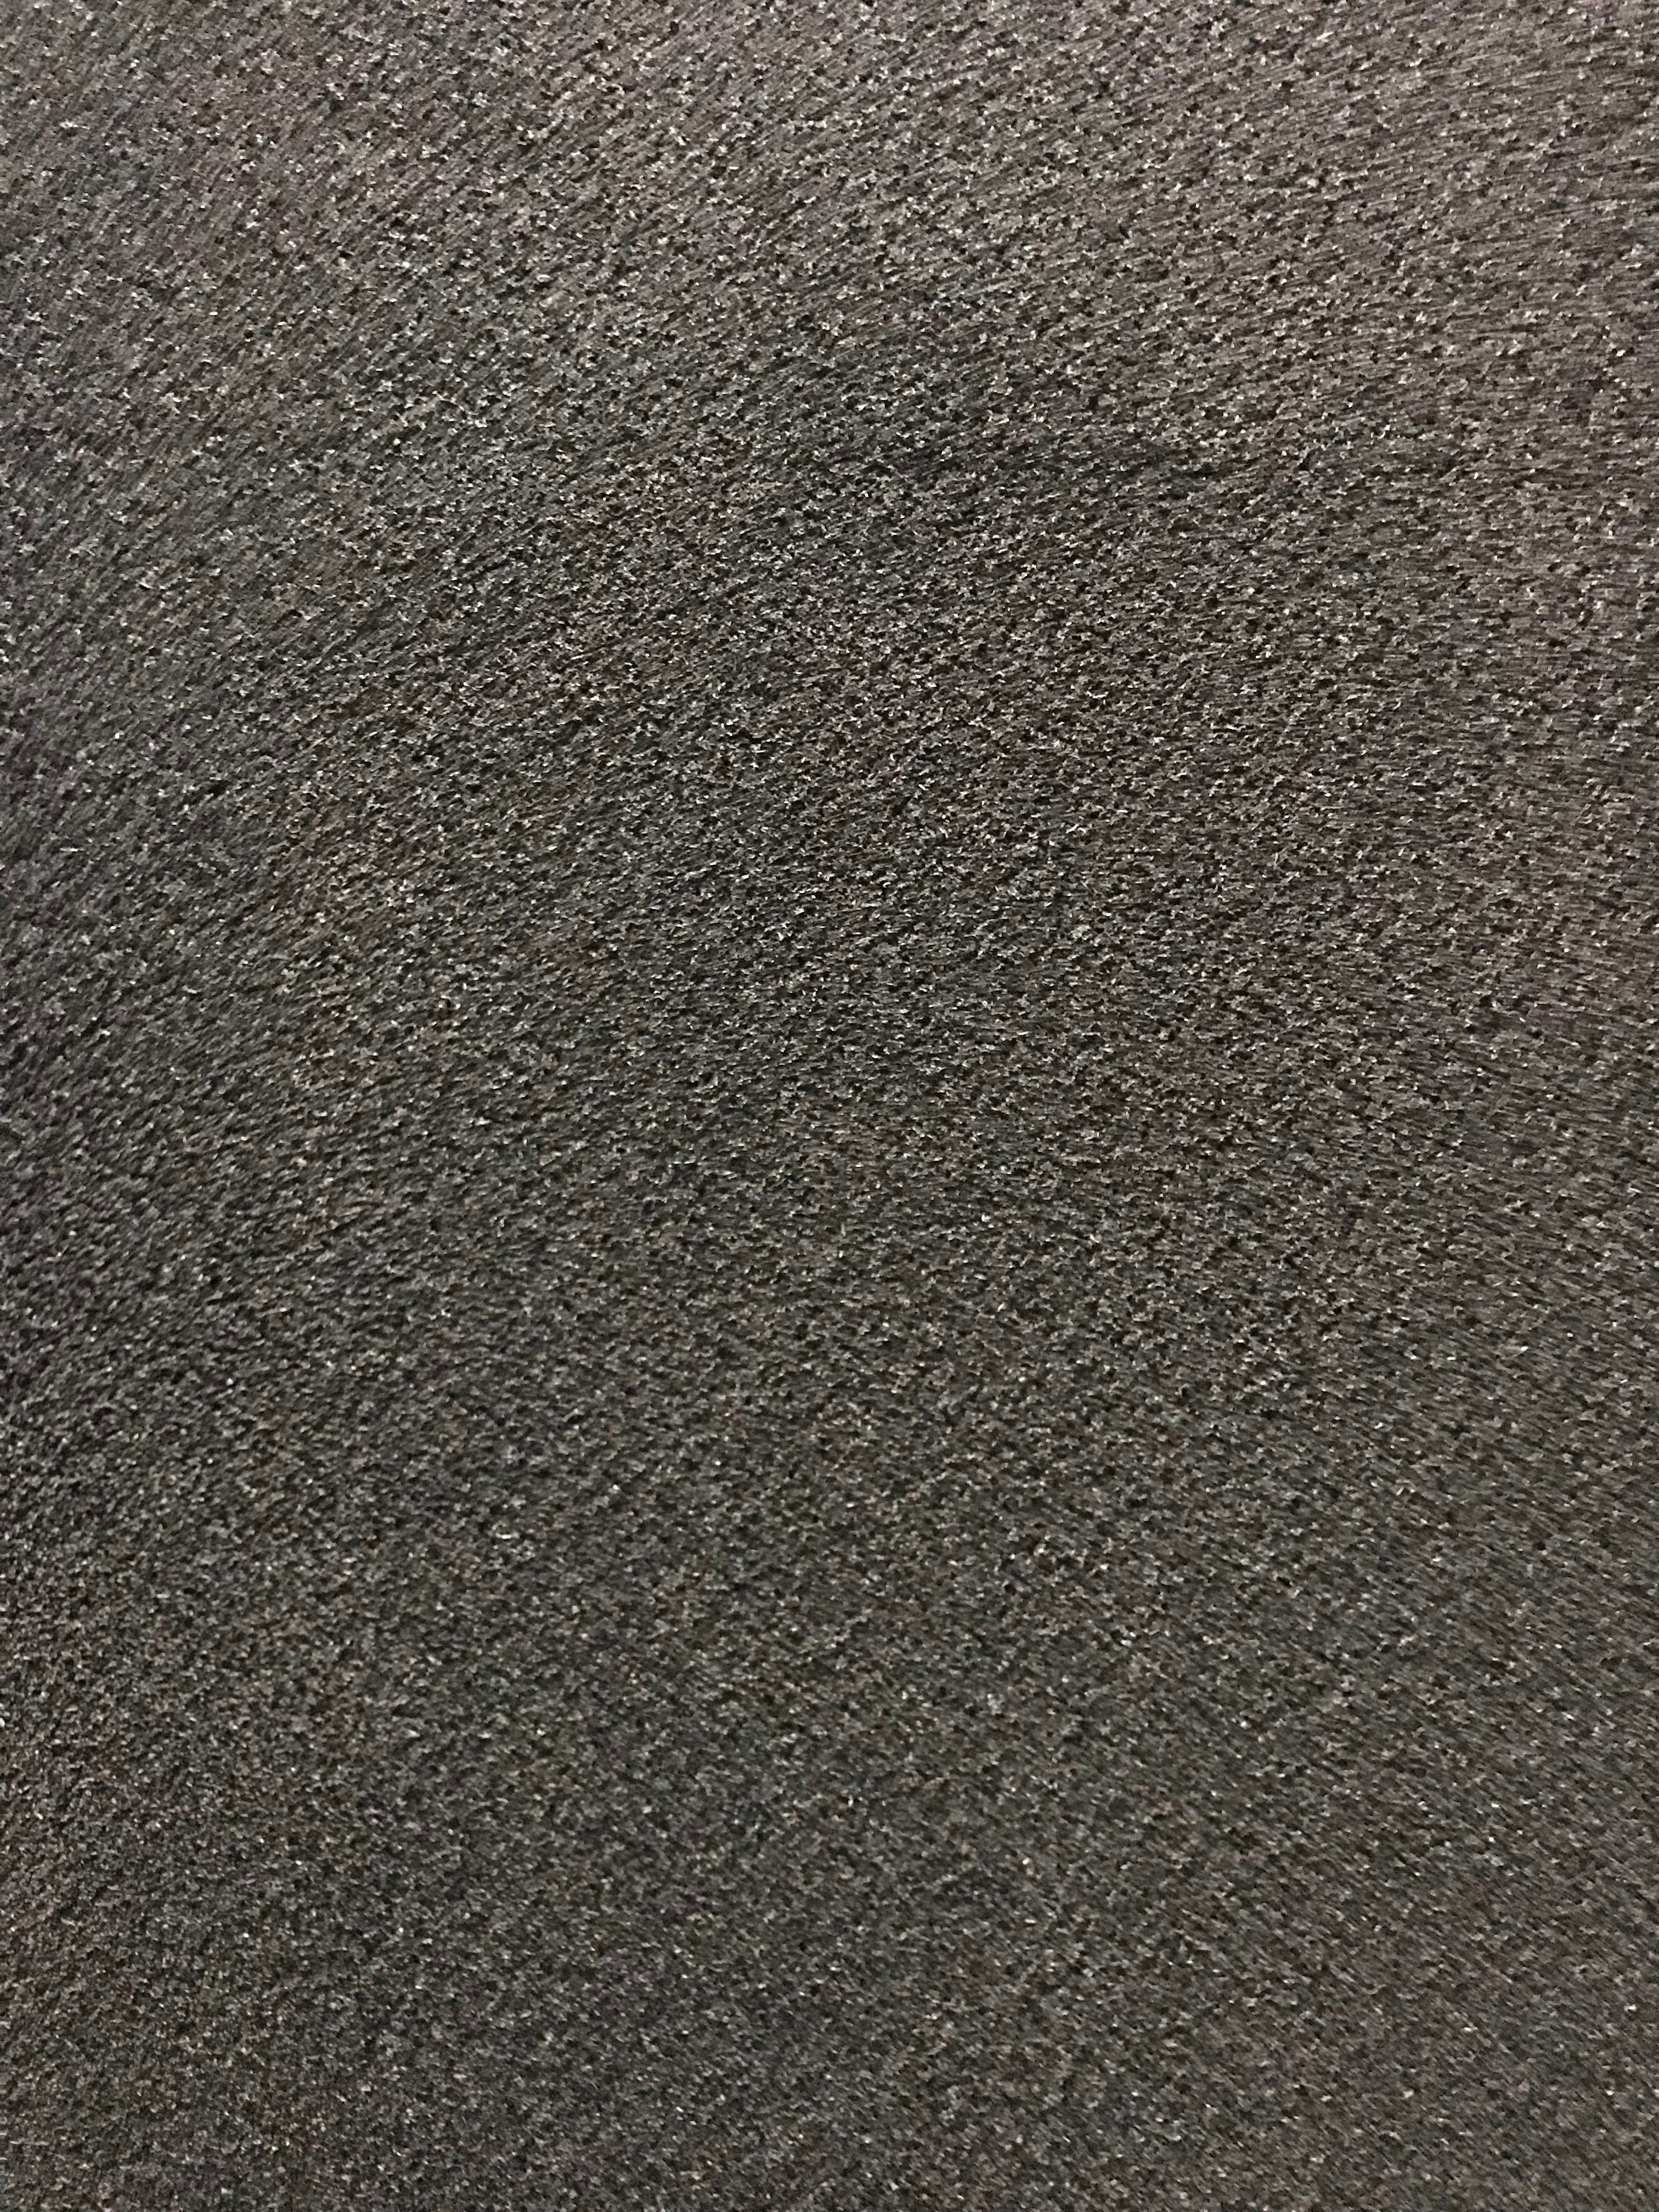 Sous-tapis caoutchouc recyclé 6 mm – Lanctôt Couvre-Sol Design